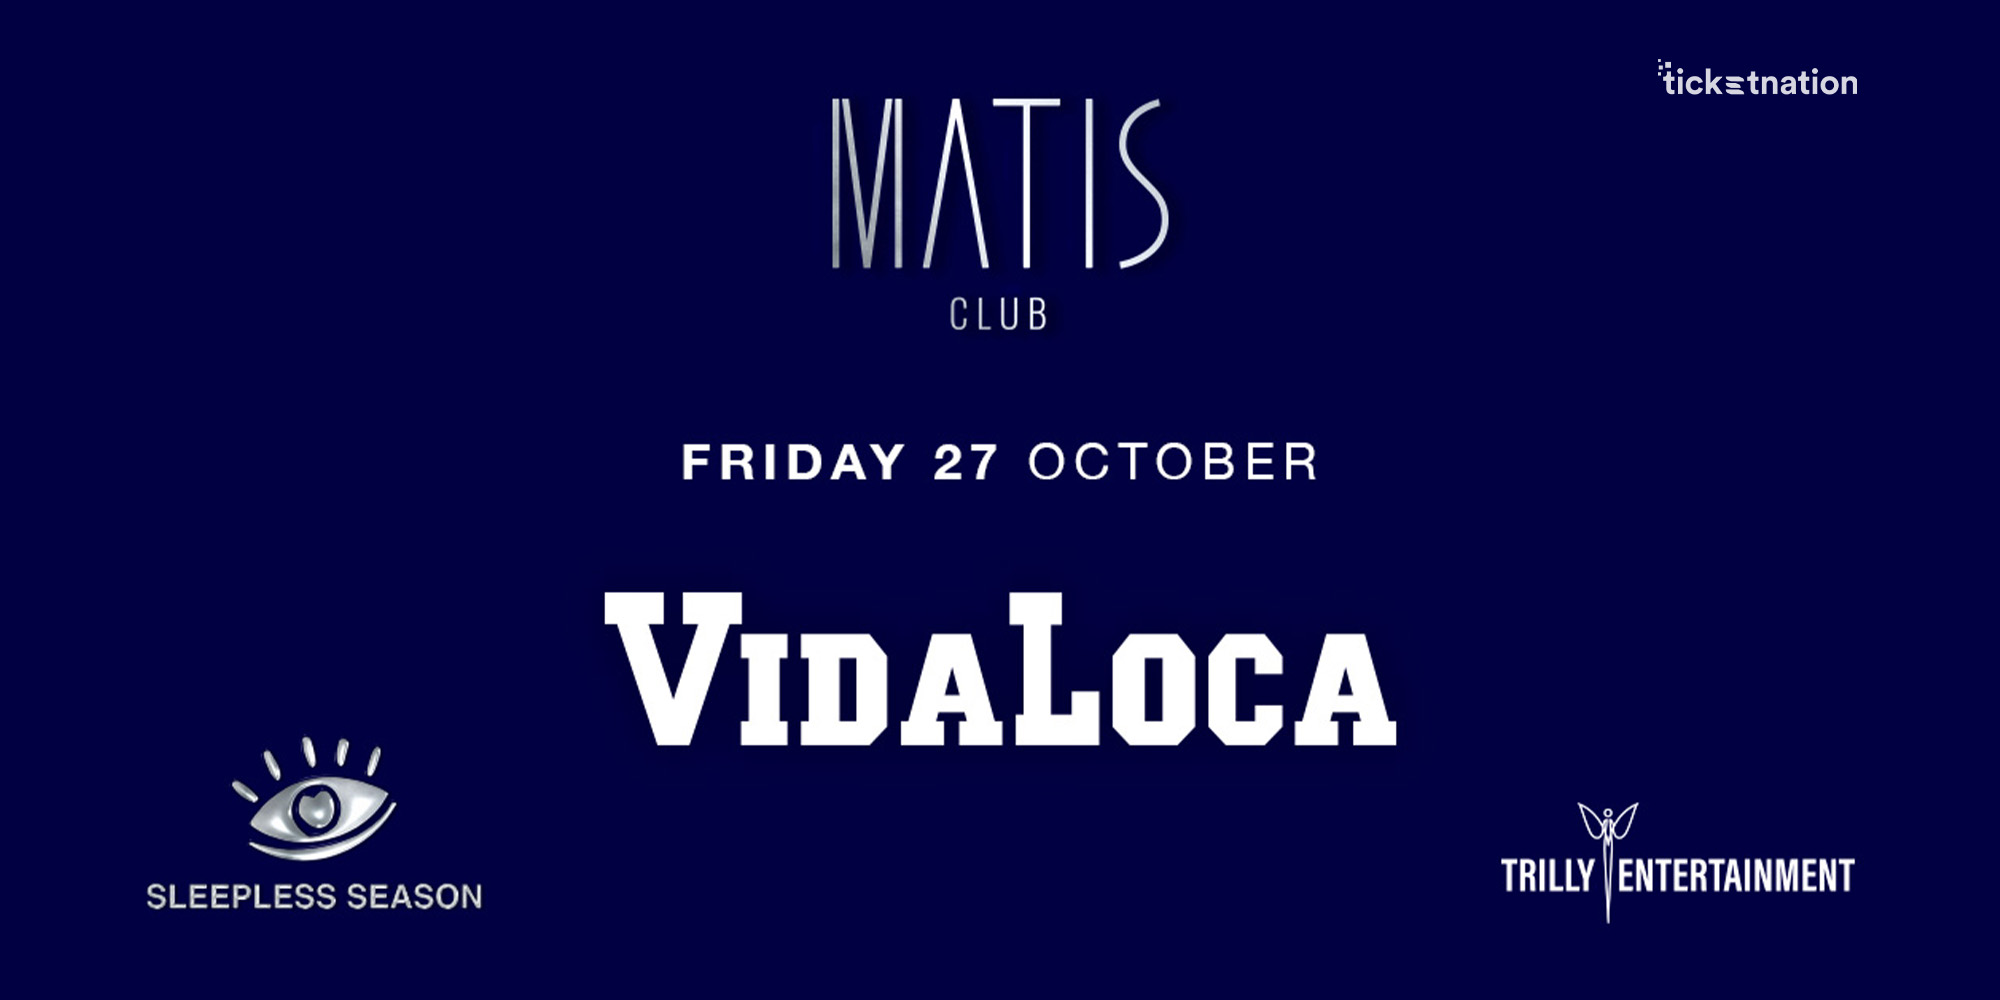 Vida Loca-Matis Club-27-10-23